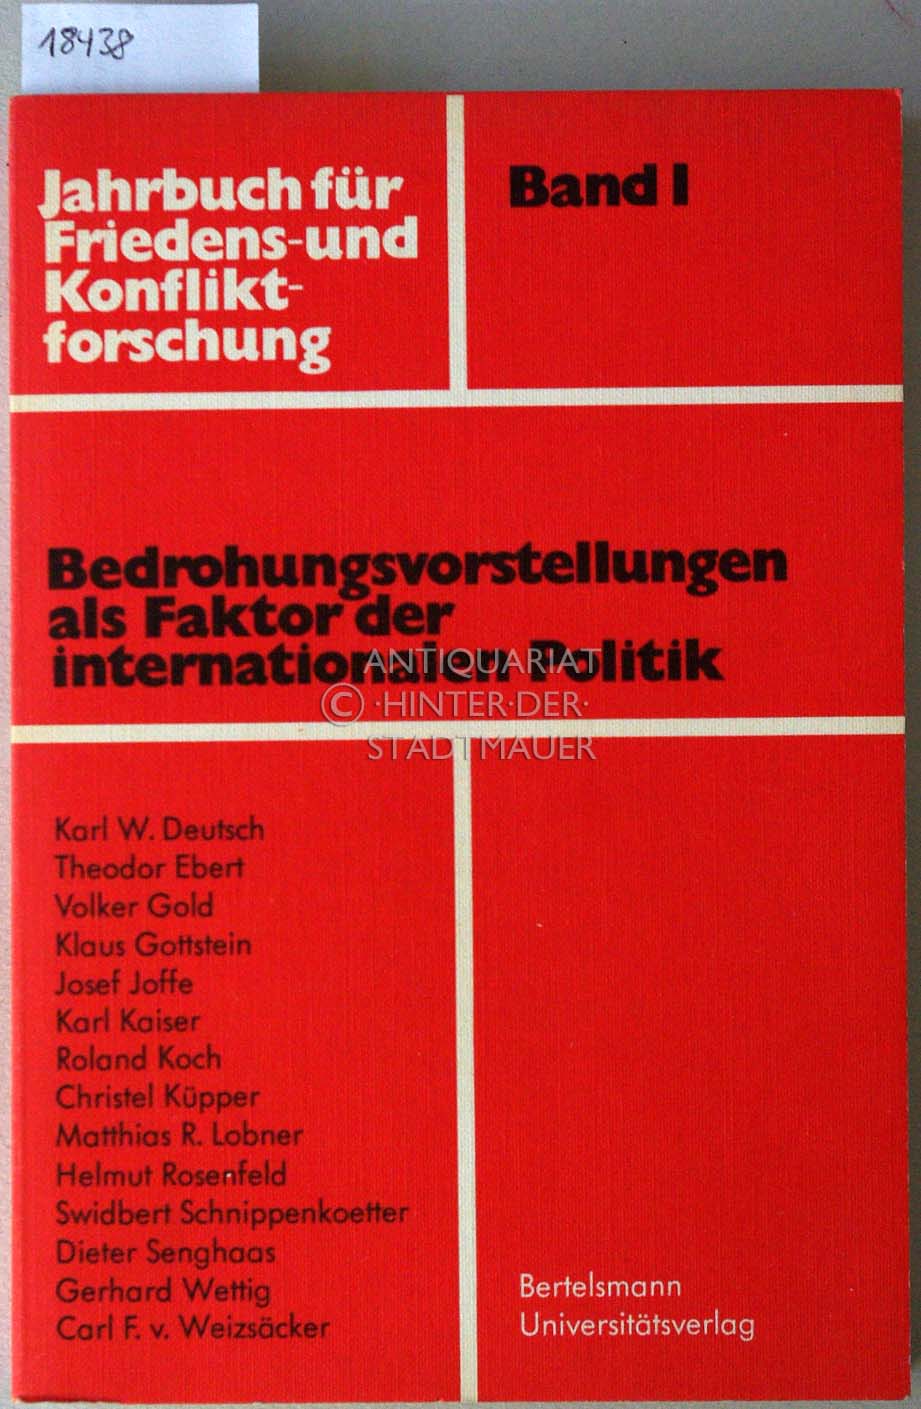 Bedrohungsvorstellungen als Faktor der internationalen Politik. [= Jahrbuch für Friedens- und Konfliktforschung, Bd. 1/1971] Mit Beitr. v. Karl W. Deutsch, . - Kaiser, Karl (Red.)